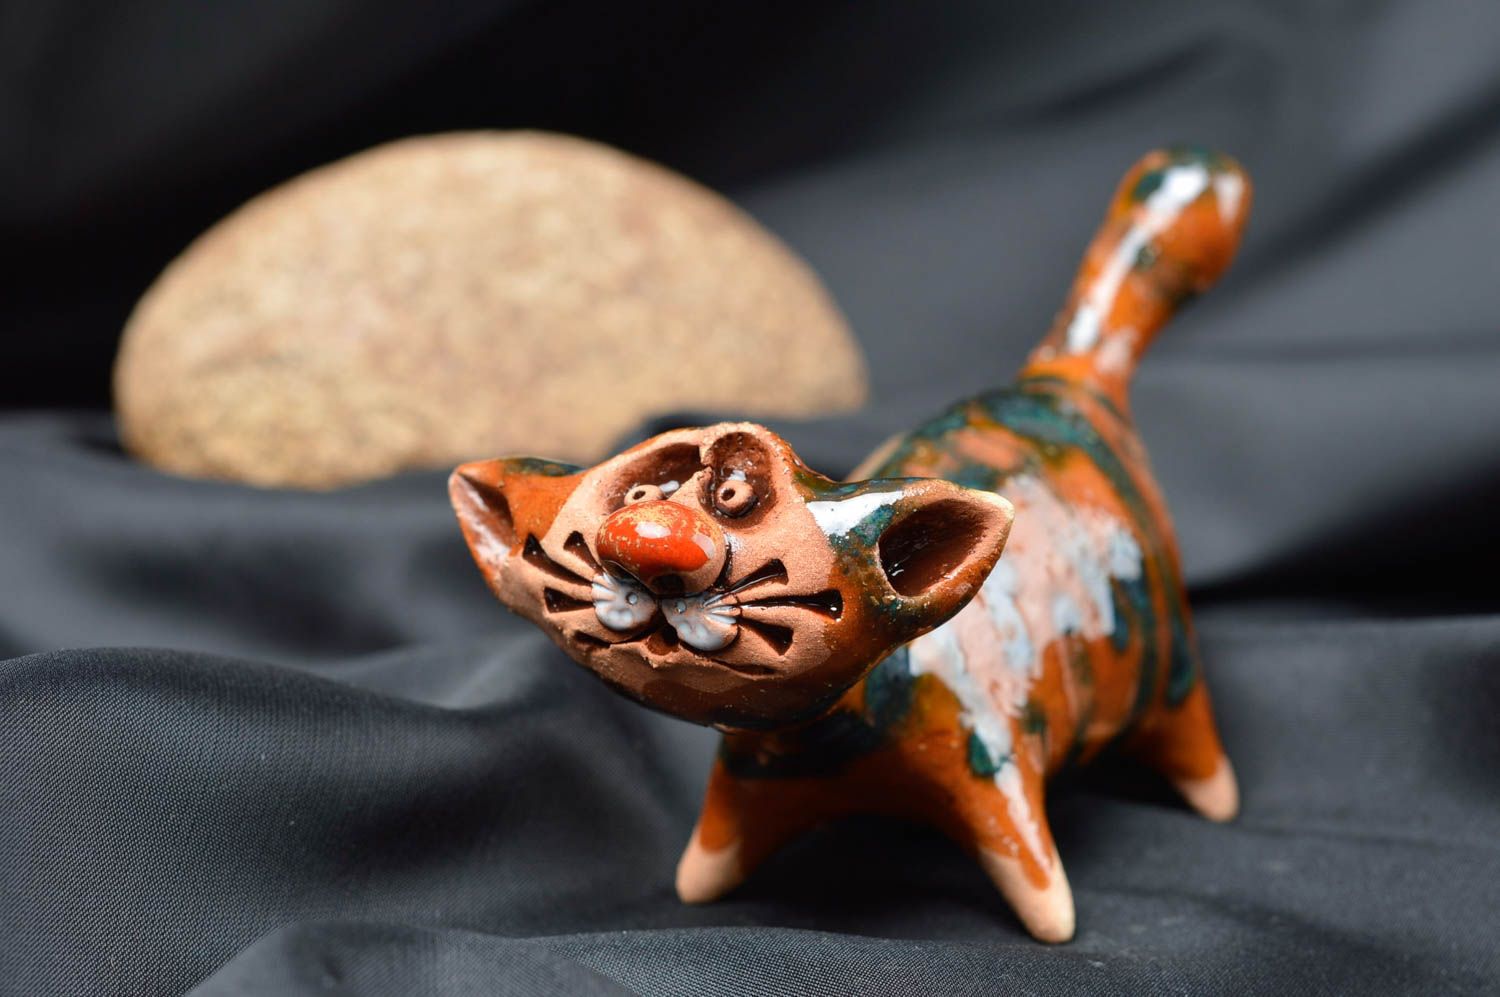 Handmade ceramic figurines ceramic animals cat decor gift ideas for women photo 1